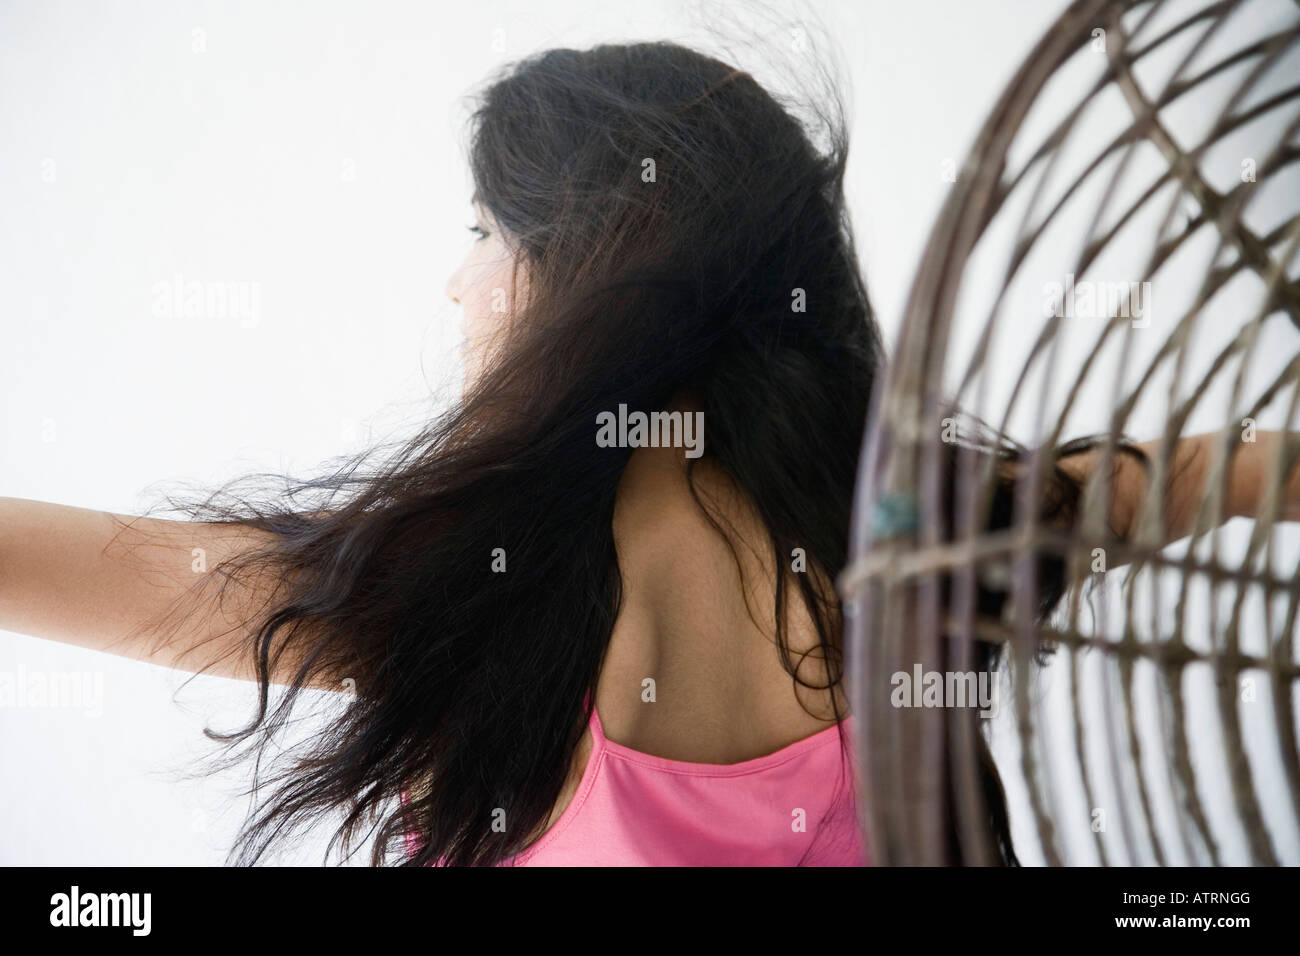 Rückansicht einer jungen Frau mit ihrem Arm ausgestreckt vor einem Ventilator Stockfoto